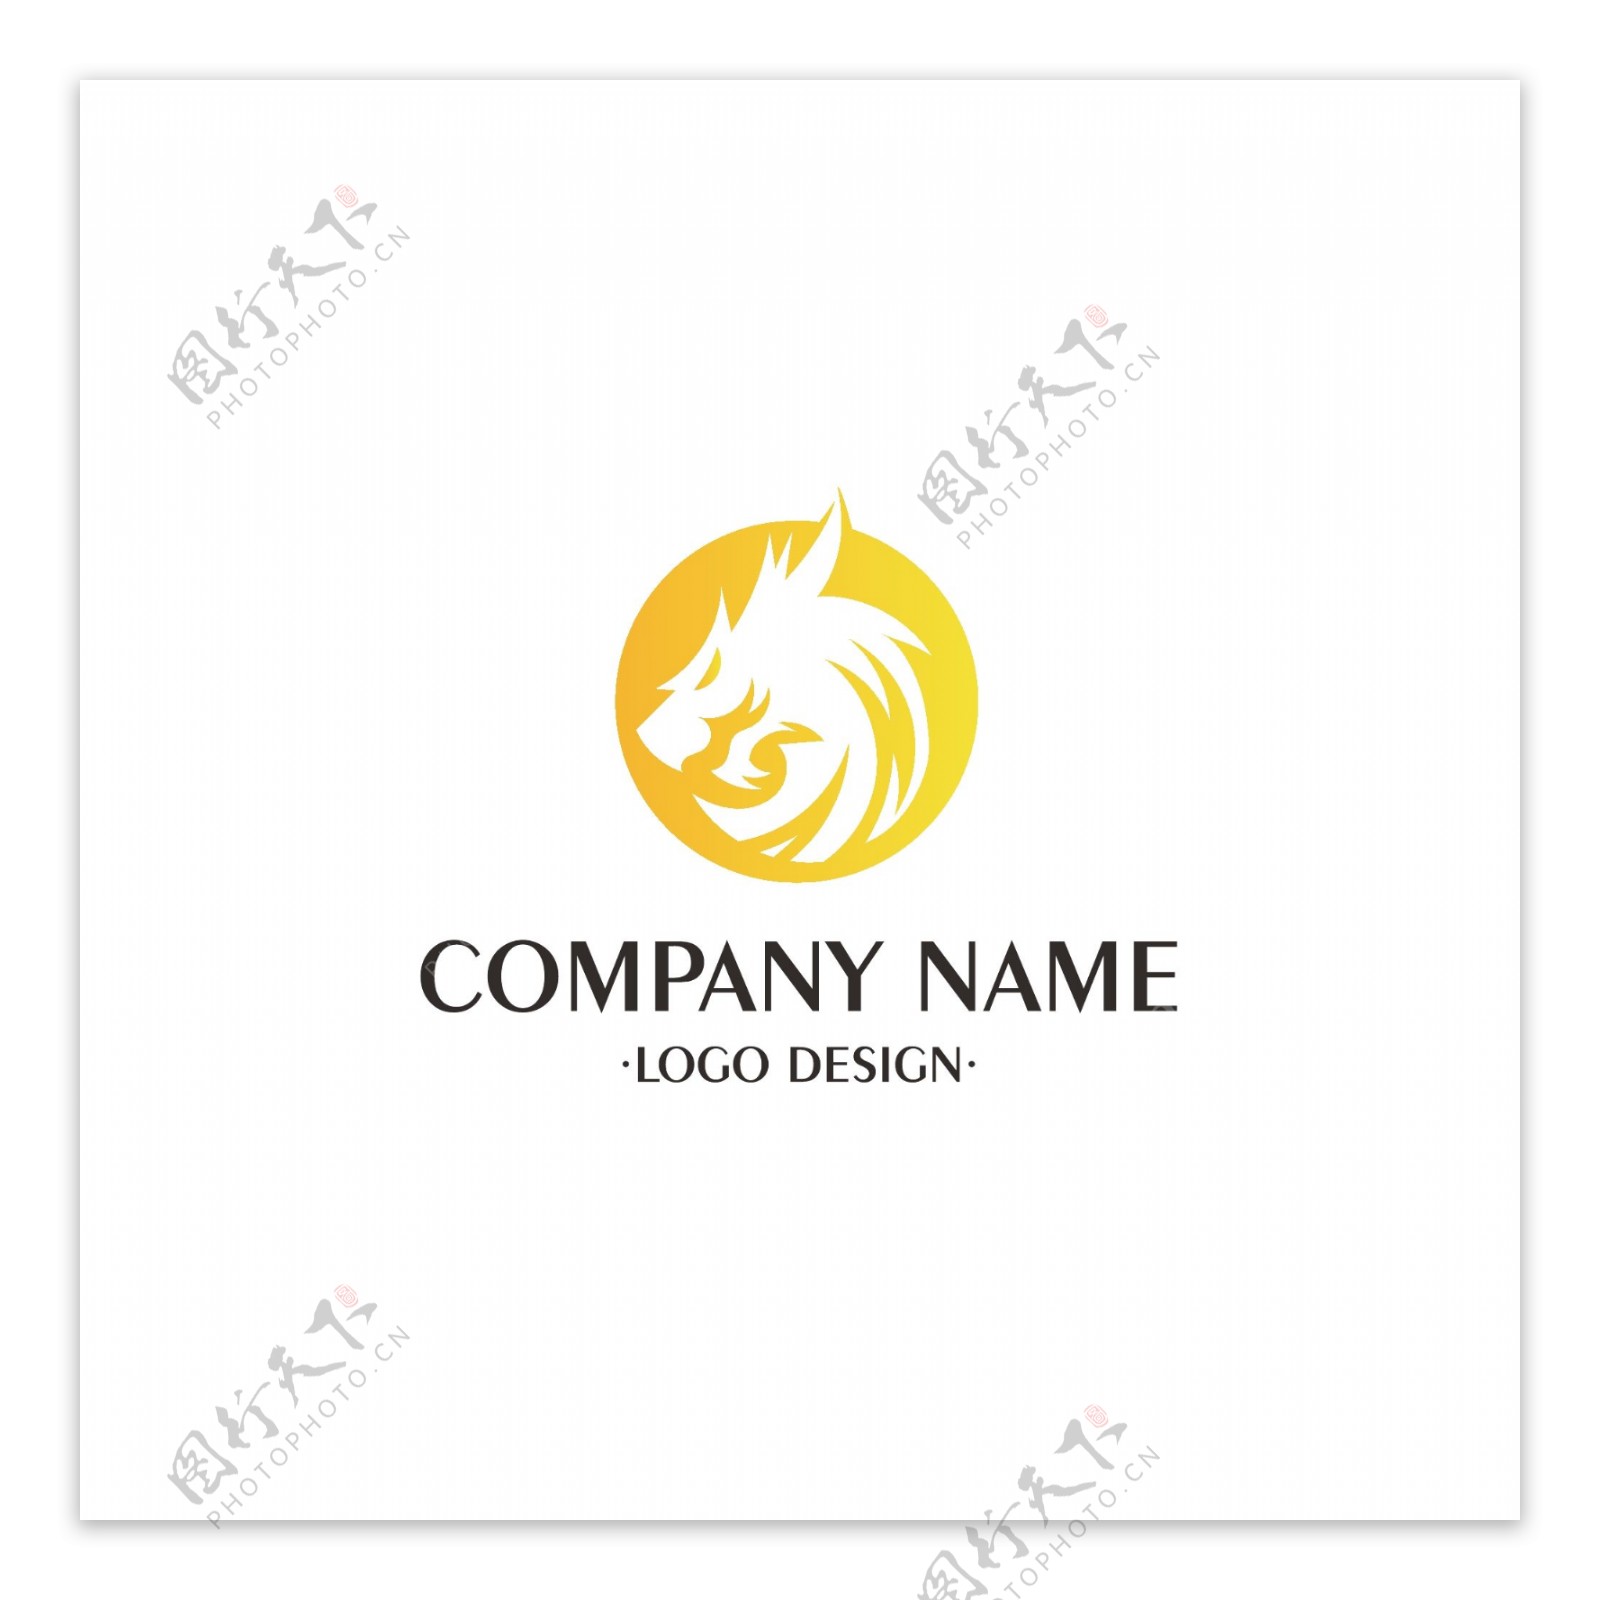 企业龙头logo设计